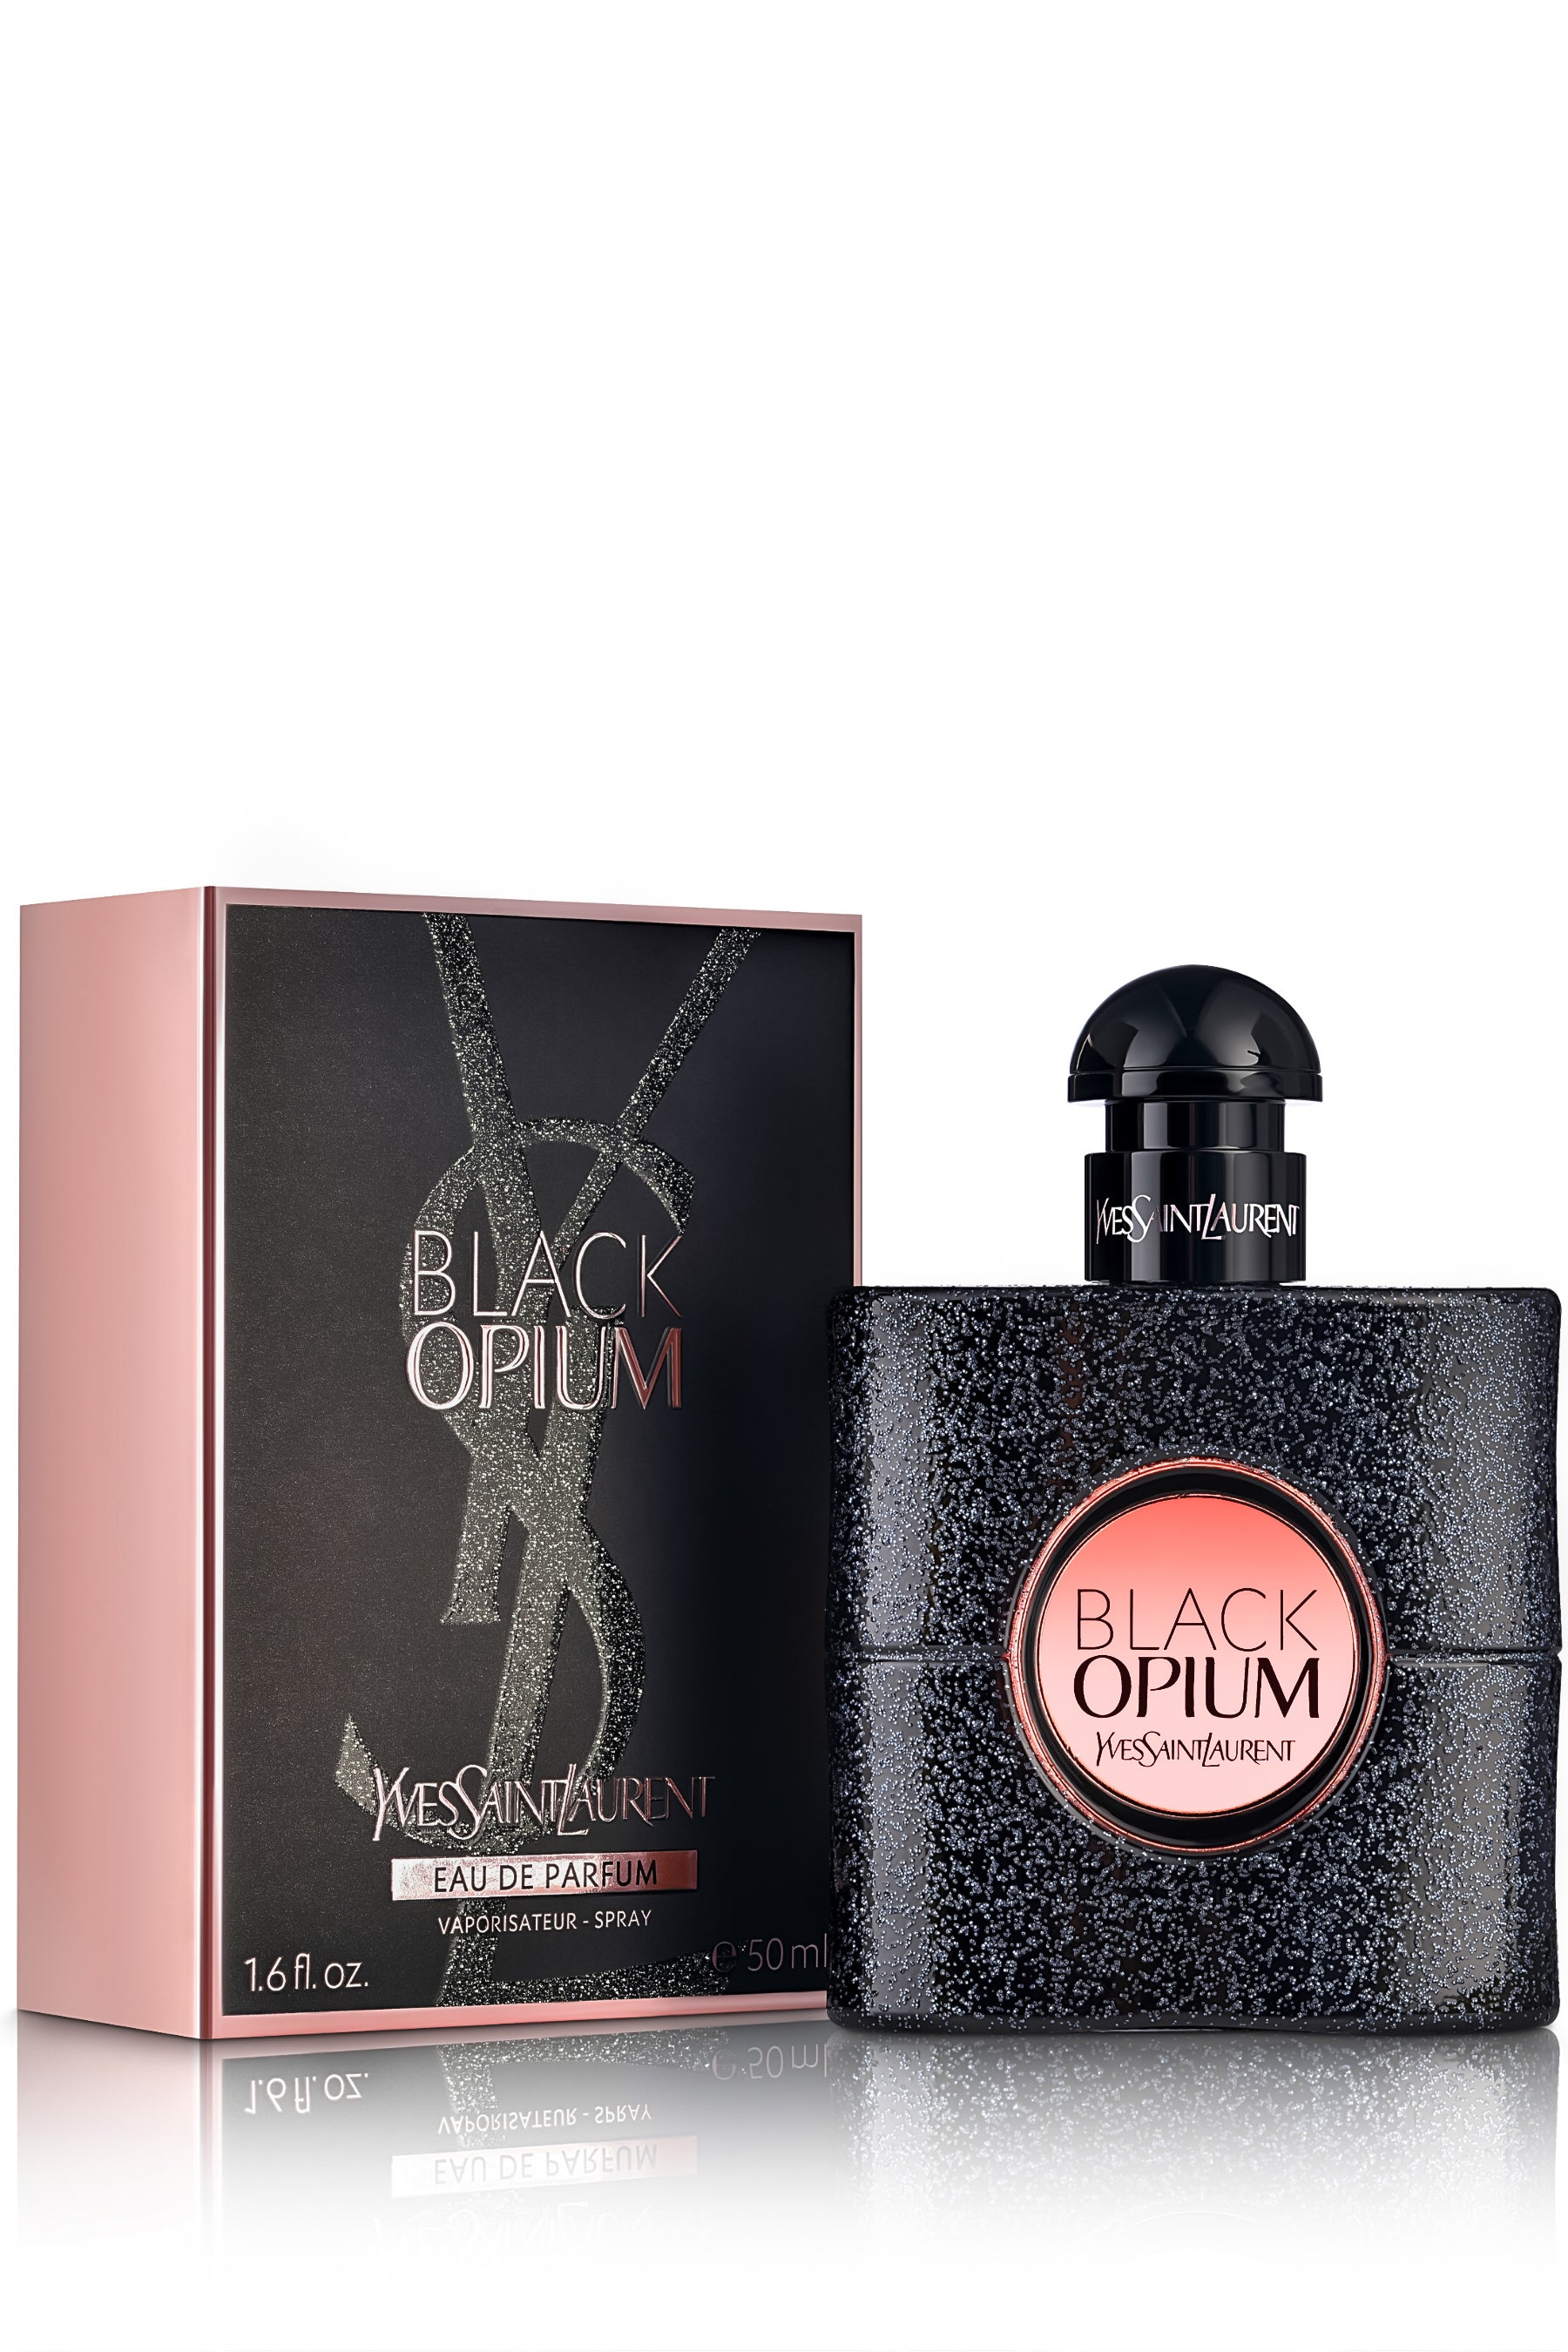 Yves Saint Laurent Black Opium Eau de Parfum Spray 5 oz